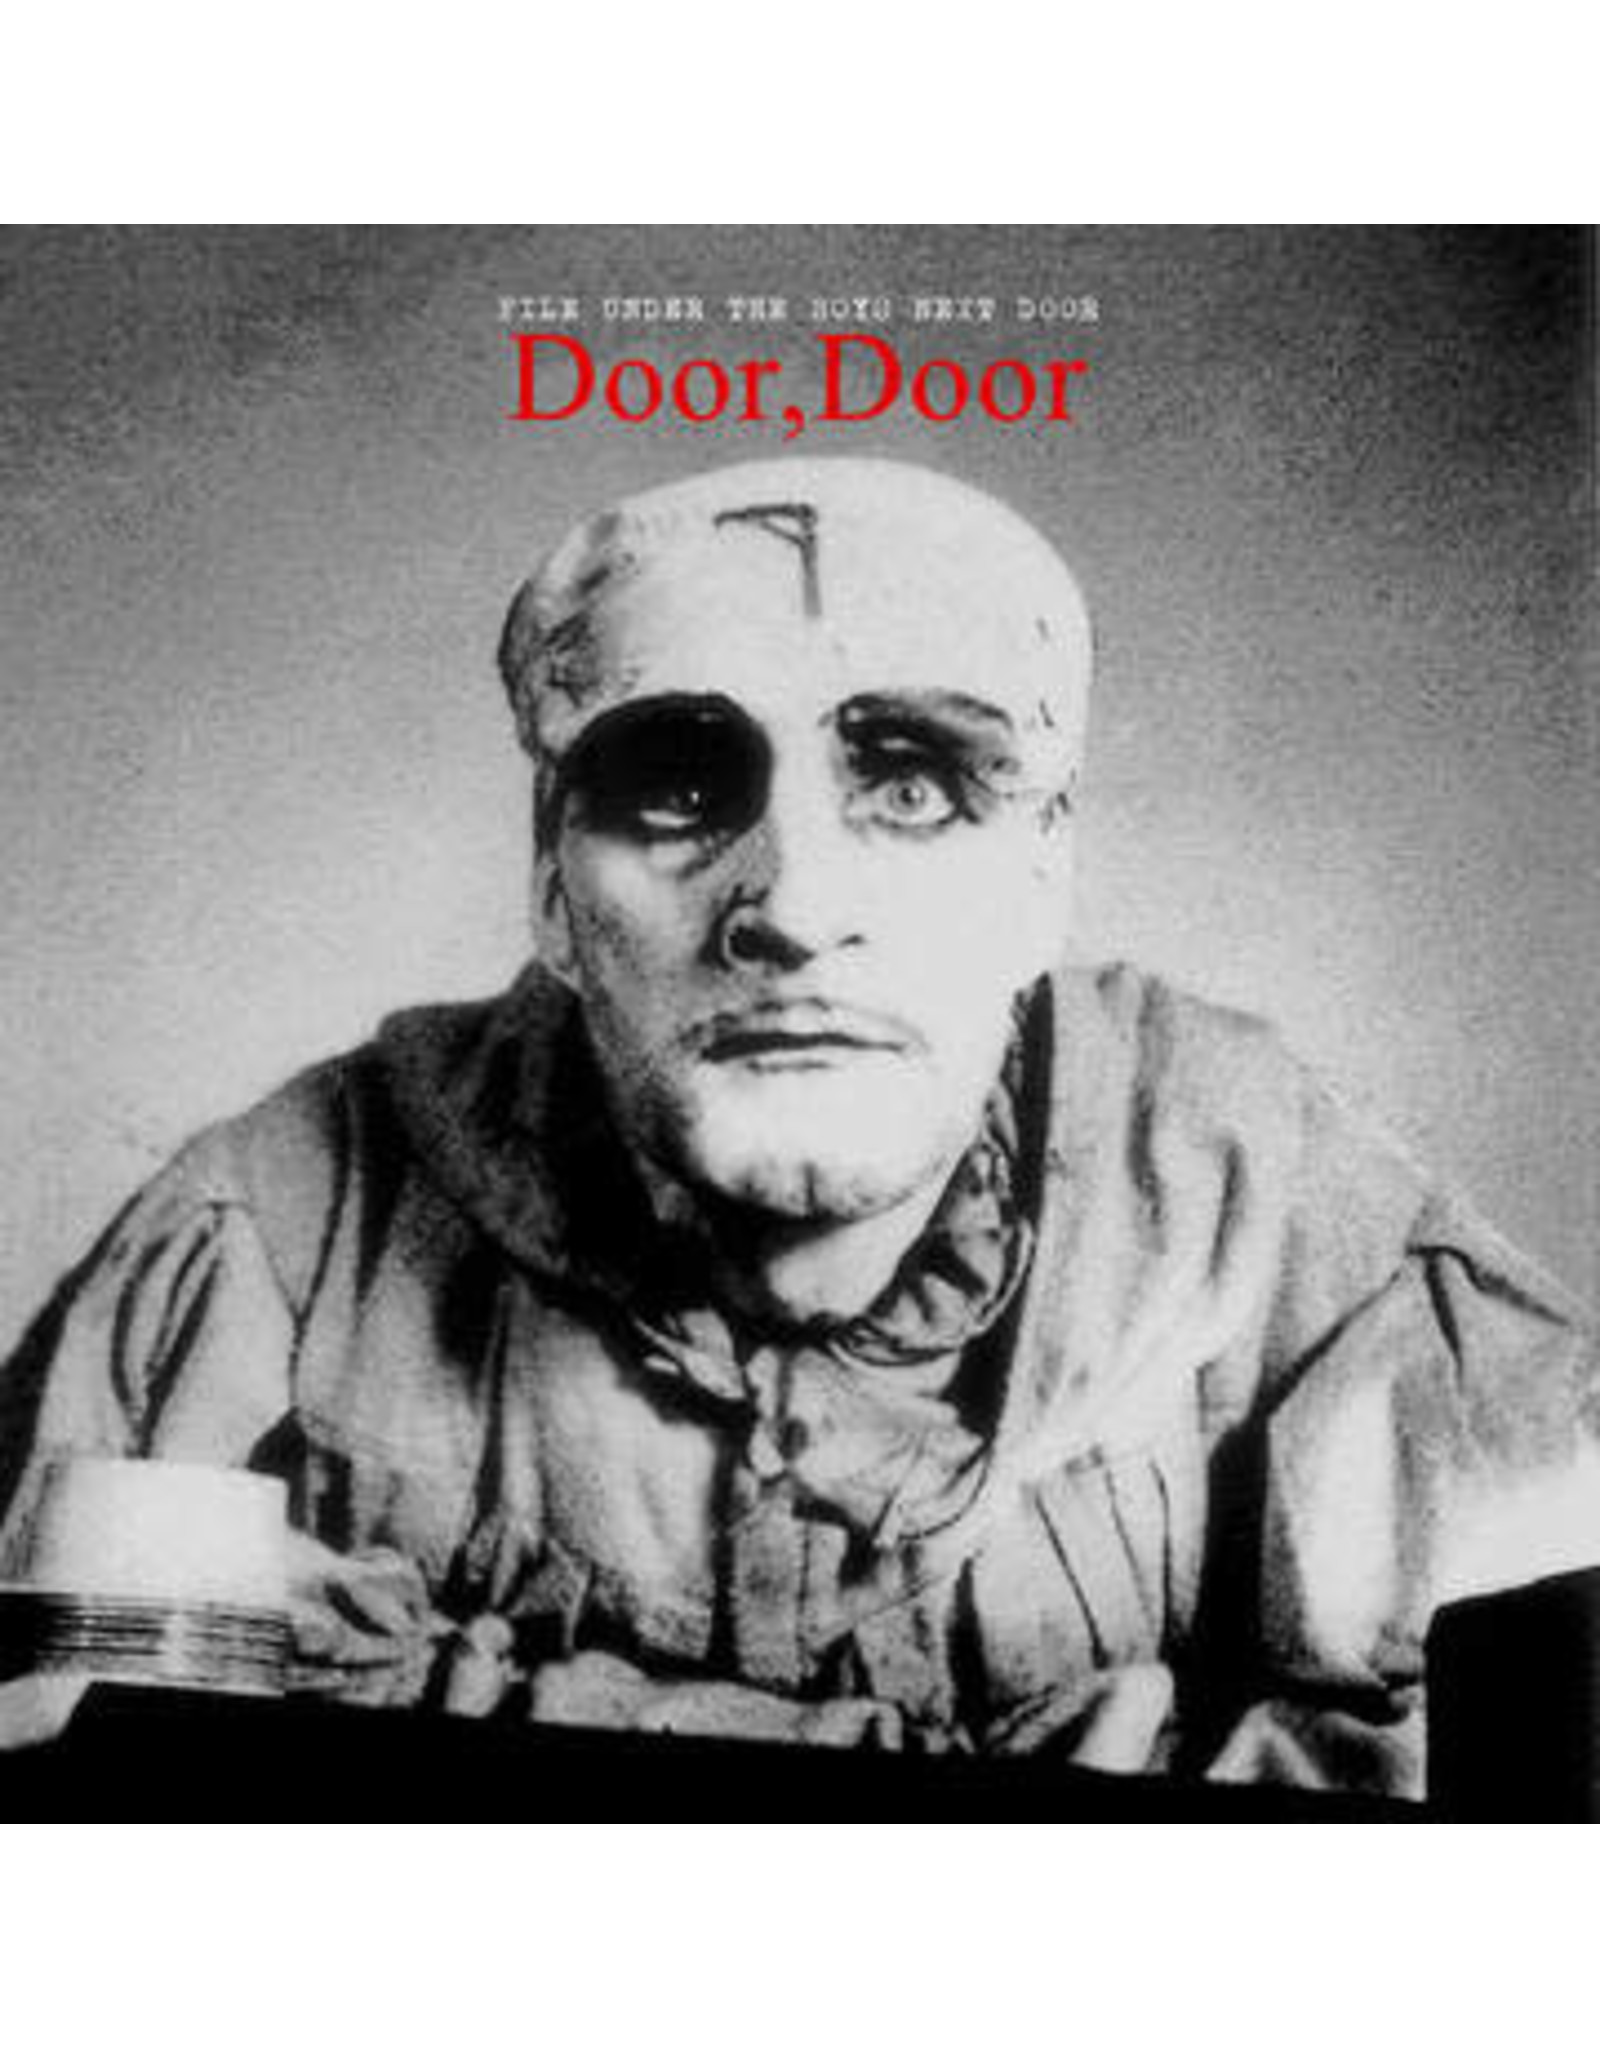 Rhino Boys Next Door: 2020RSD2 - Door, Door (red vinyl) LP